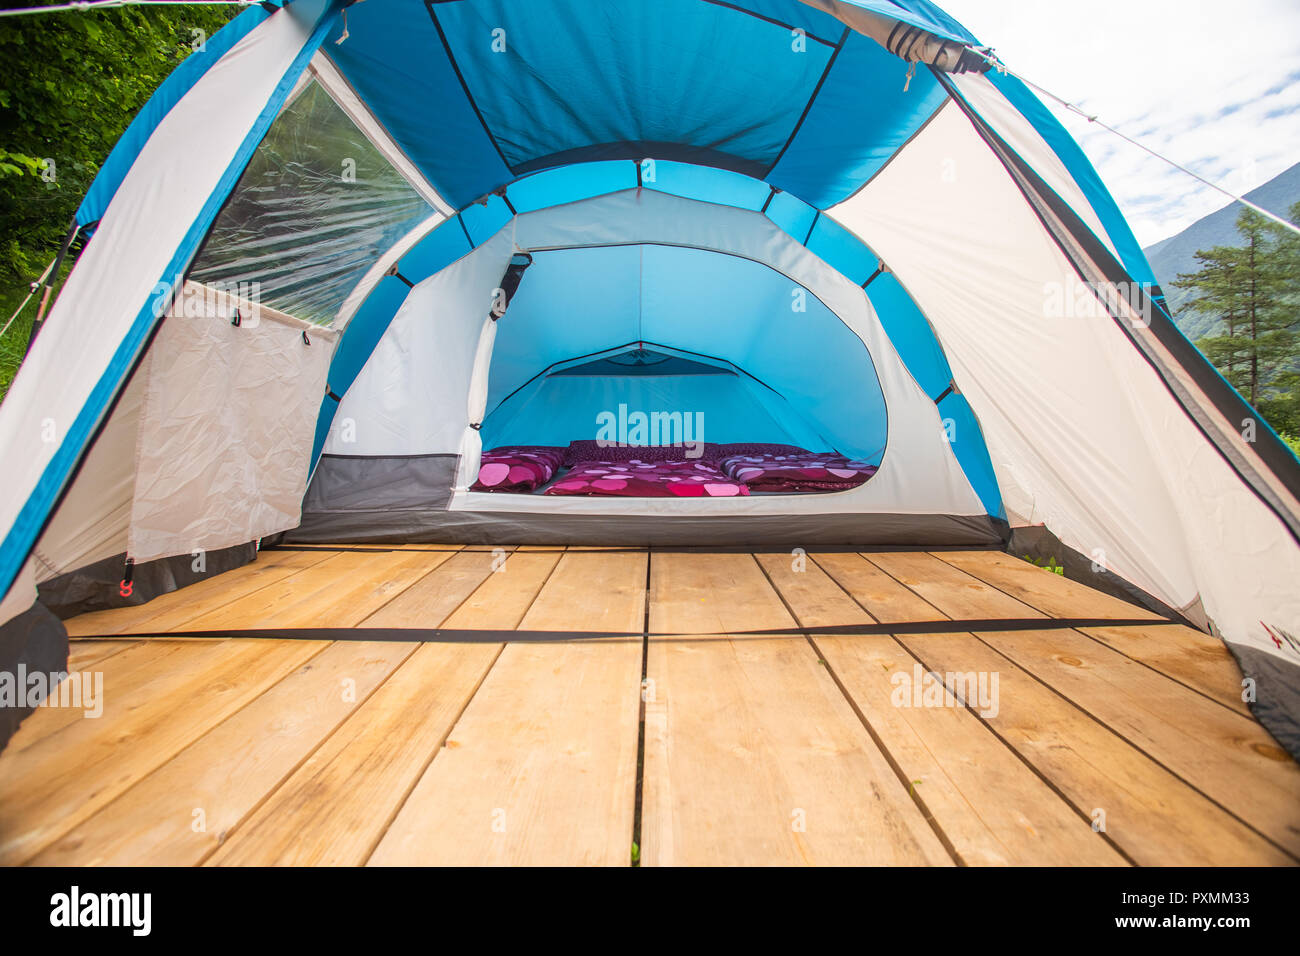 Zelt Interieur mit Matratzen und Bettdecken lila auf hölzernen Plattform  Stockfotografie - Alamy